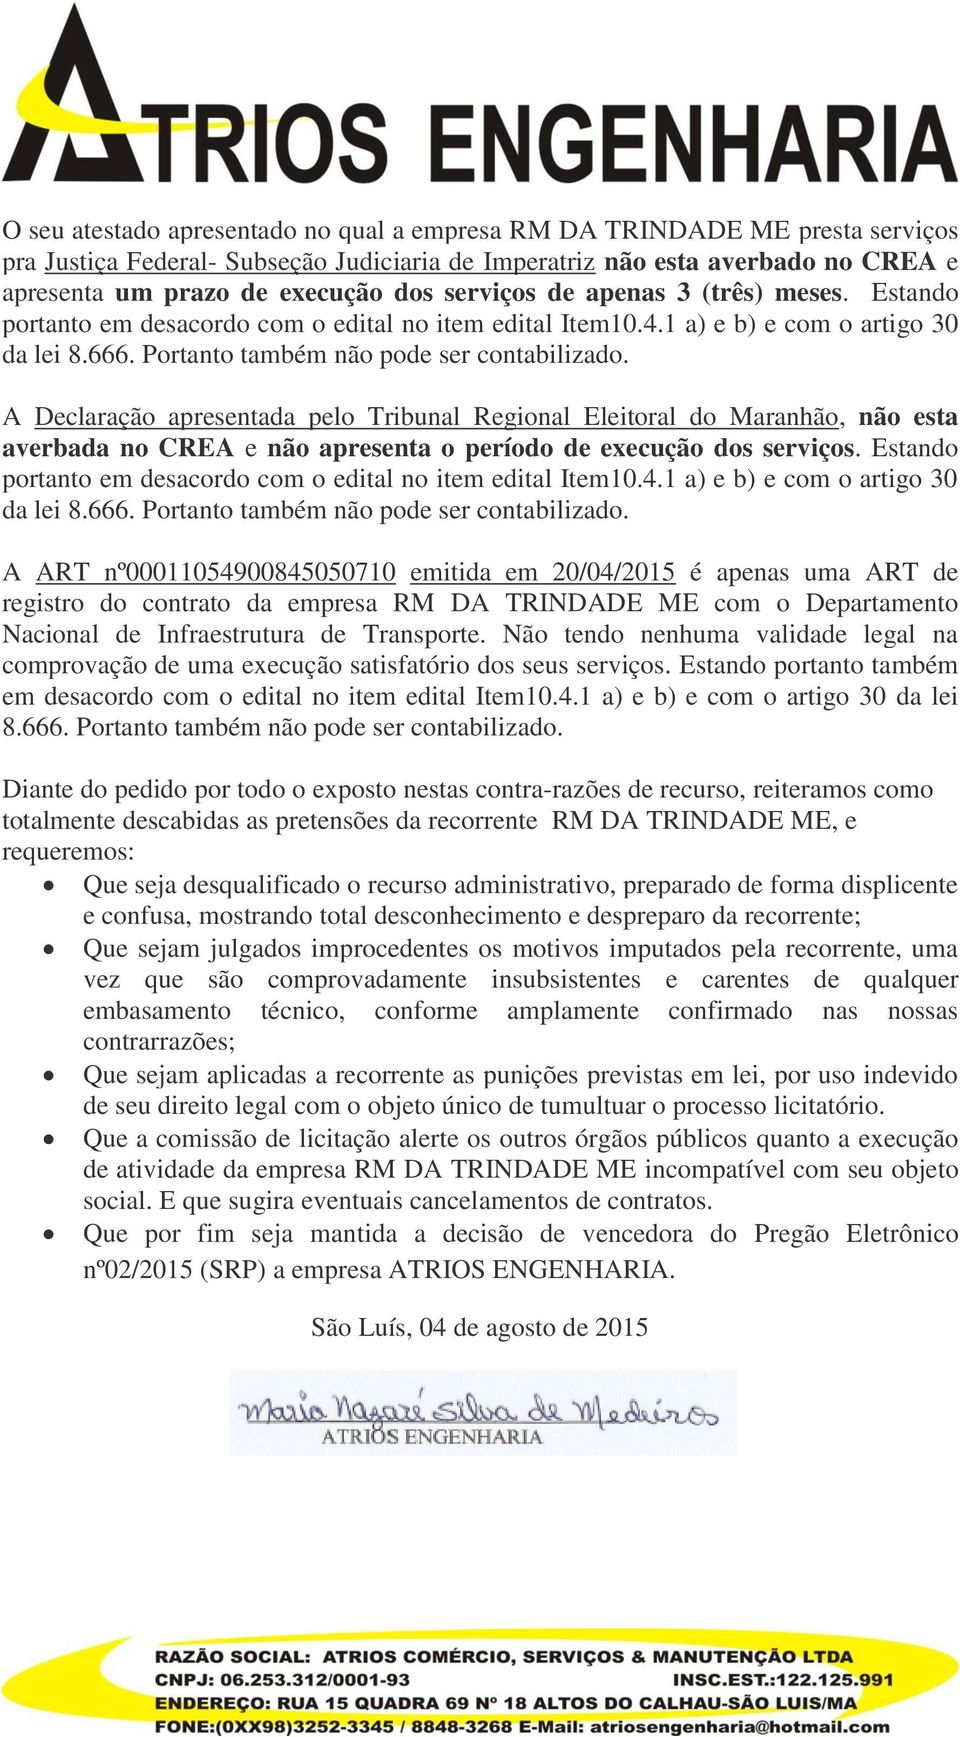 A Declaração apresentada pelo Tribunal Regional Eleitoral do Maranhão, não esta averbada no CREA e não apresenta o período de execução dos serviços.